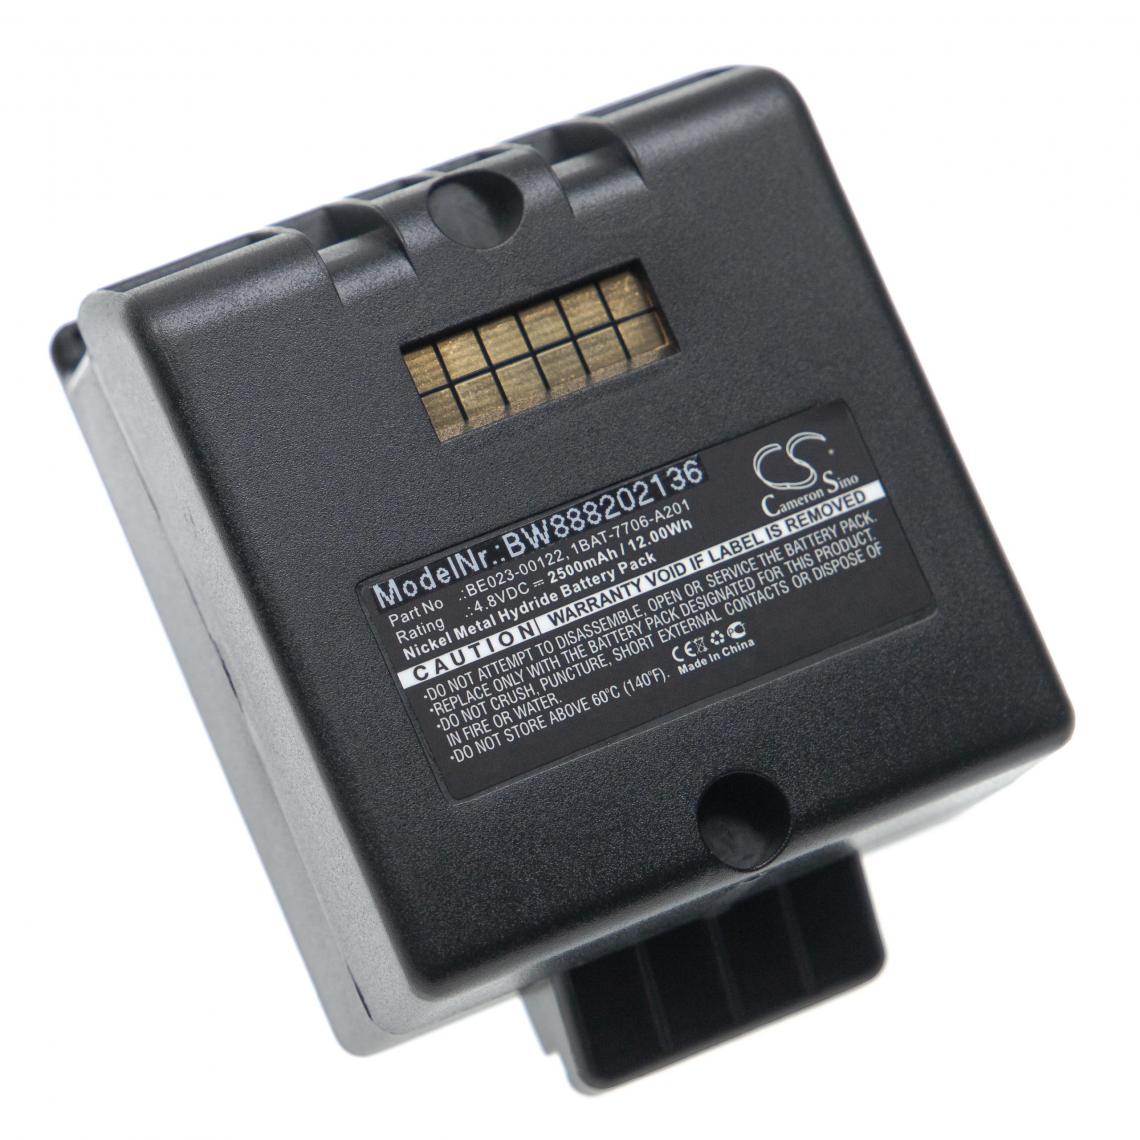 Vhbw - vhbw Batterie remplacement pour Cattron Theimig 1BAT-7706-A201, BE023-00122 pour télécommande industrielle (2500mAh, 4,8V, NiMH) - noir - Autre appareil de mesure